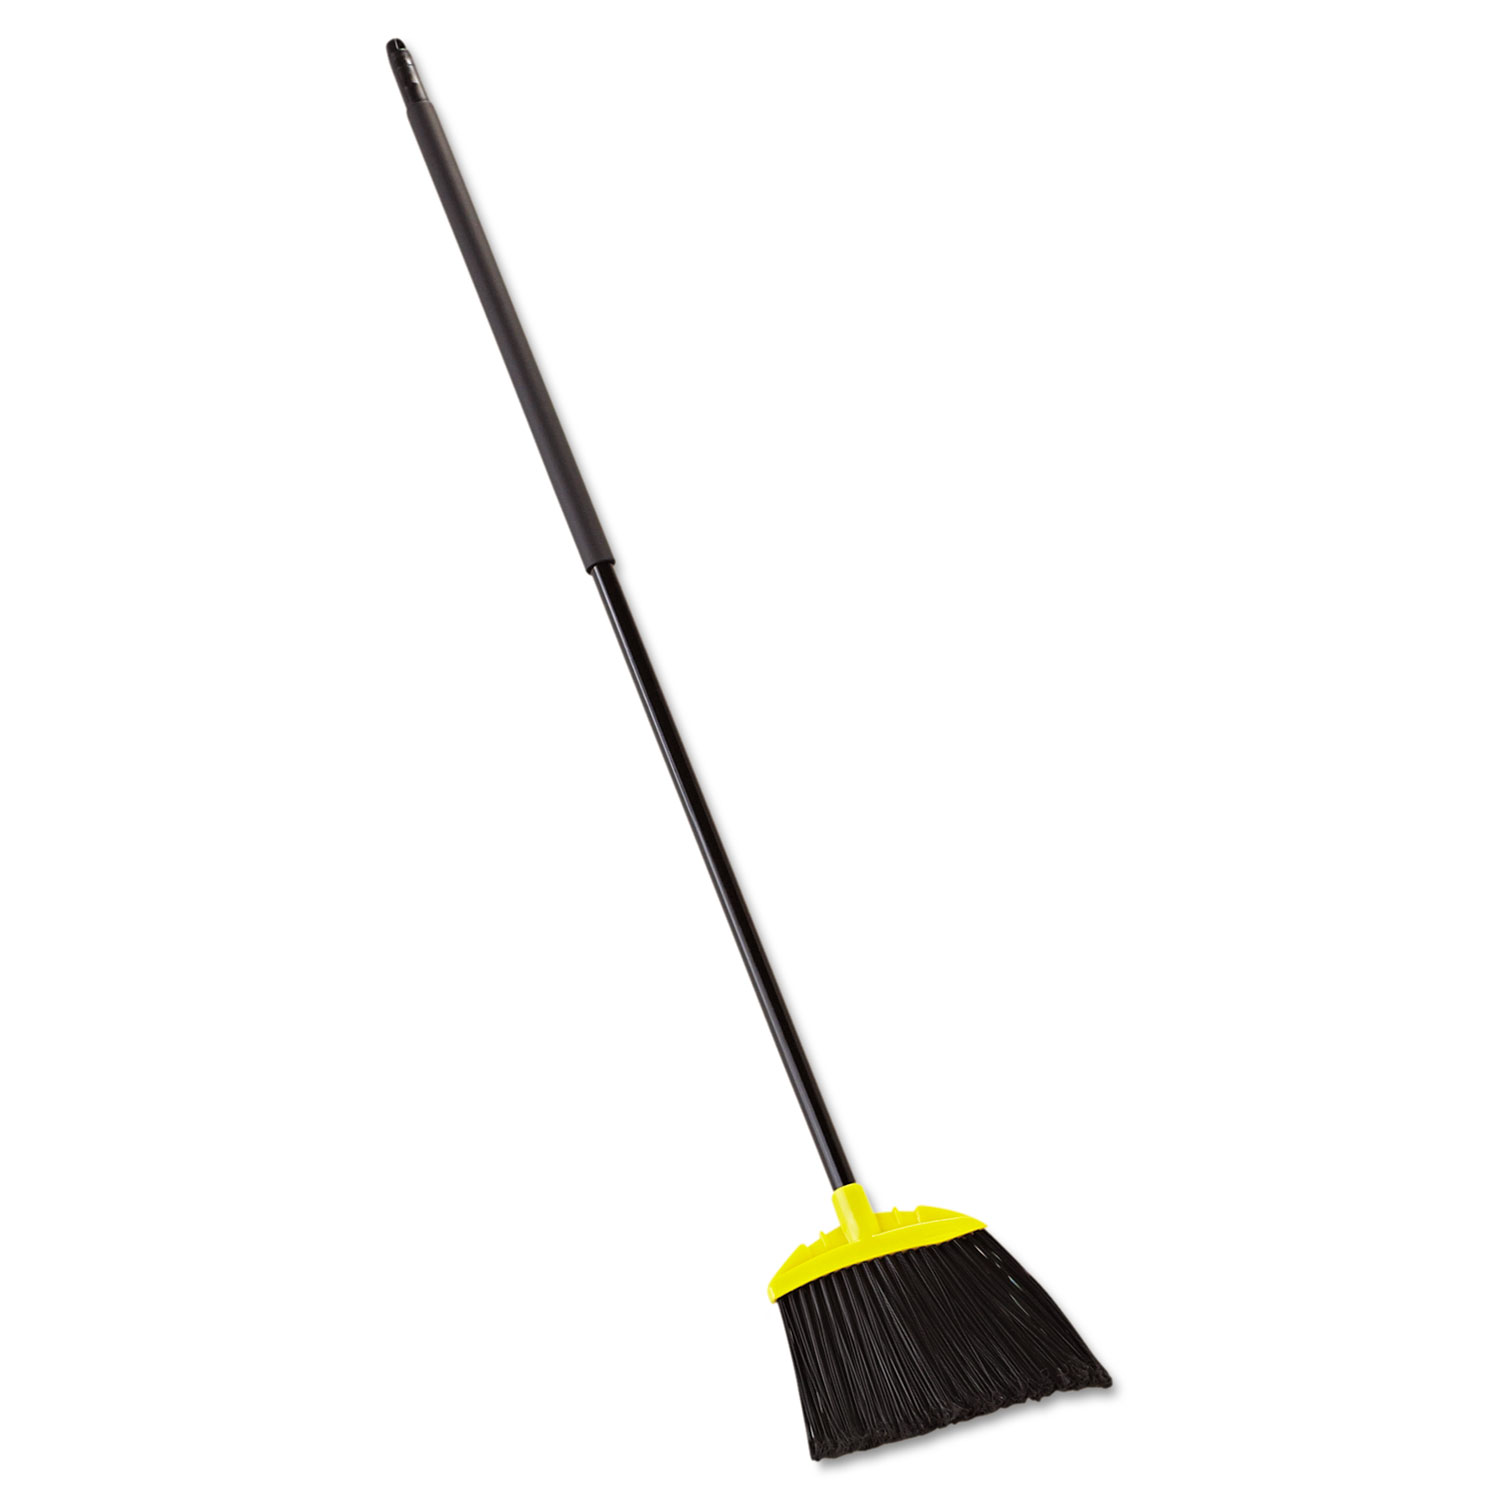 Jumbo Smooth Sweep Angled Broom, 46 Handle, Black/Yellow, 6/Carton